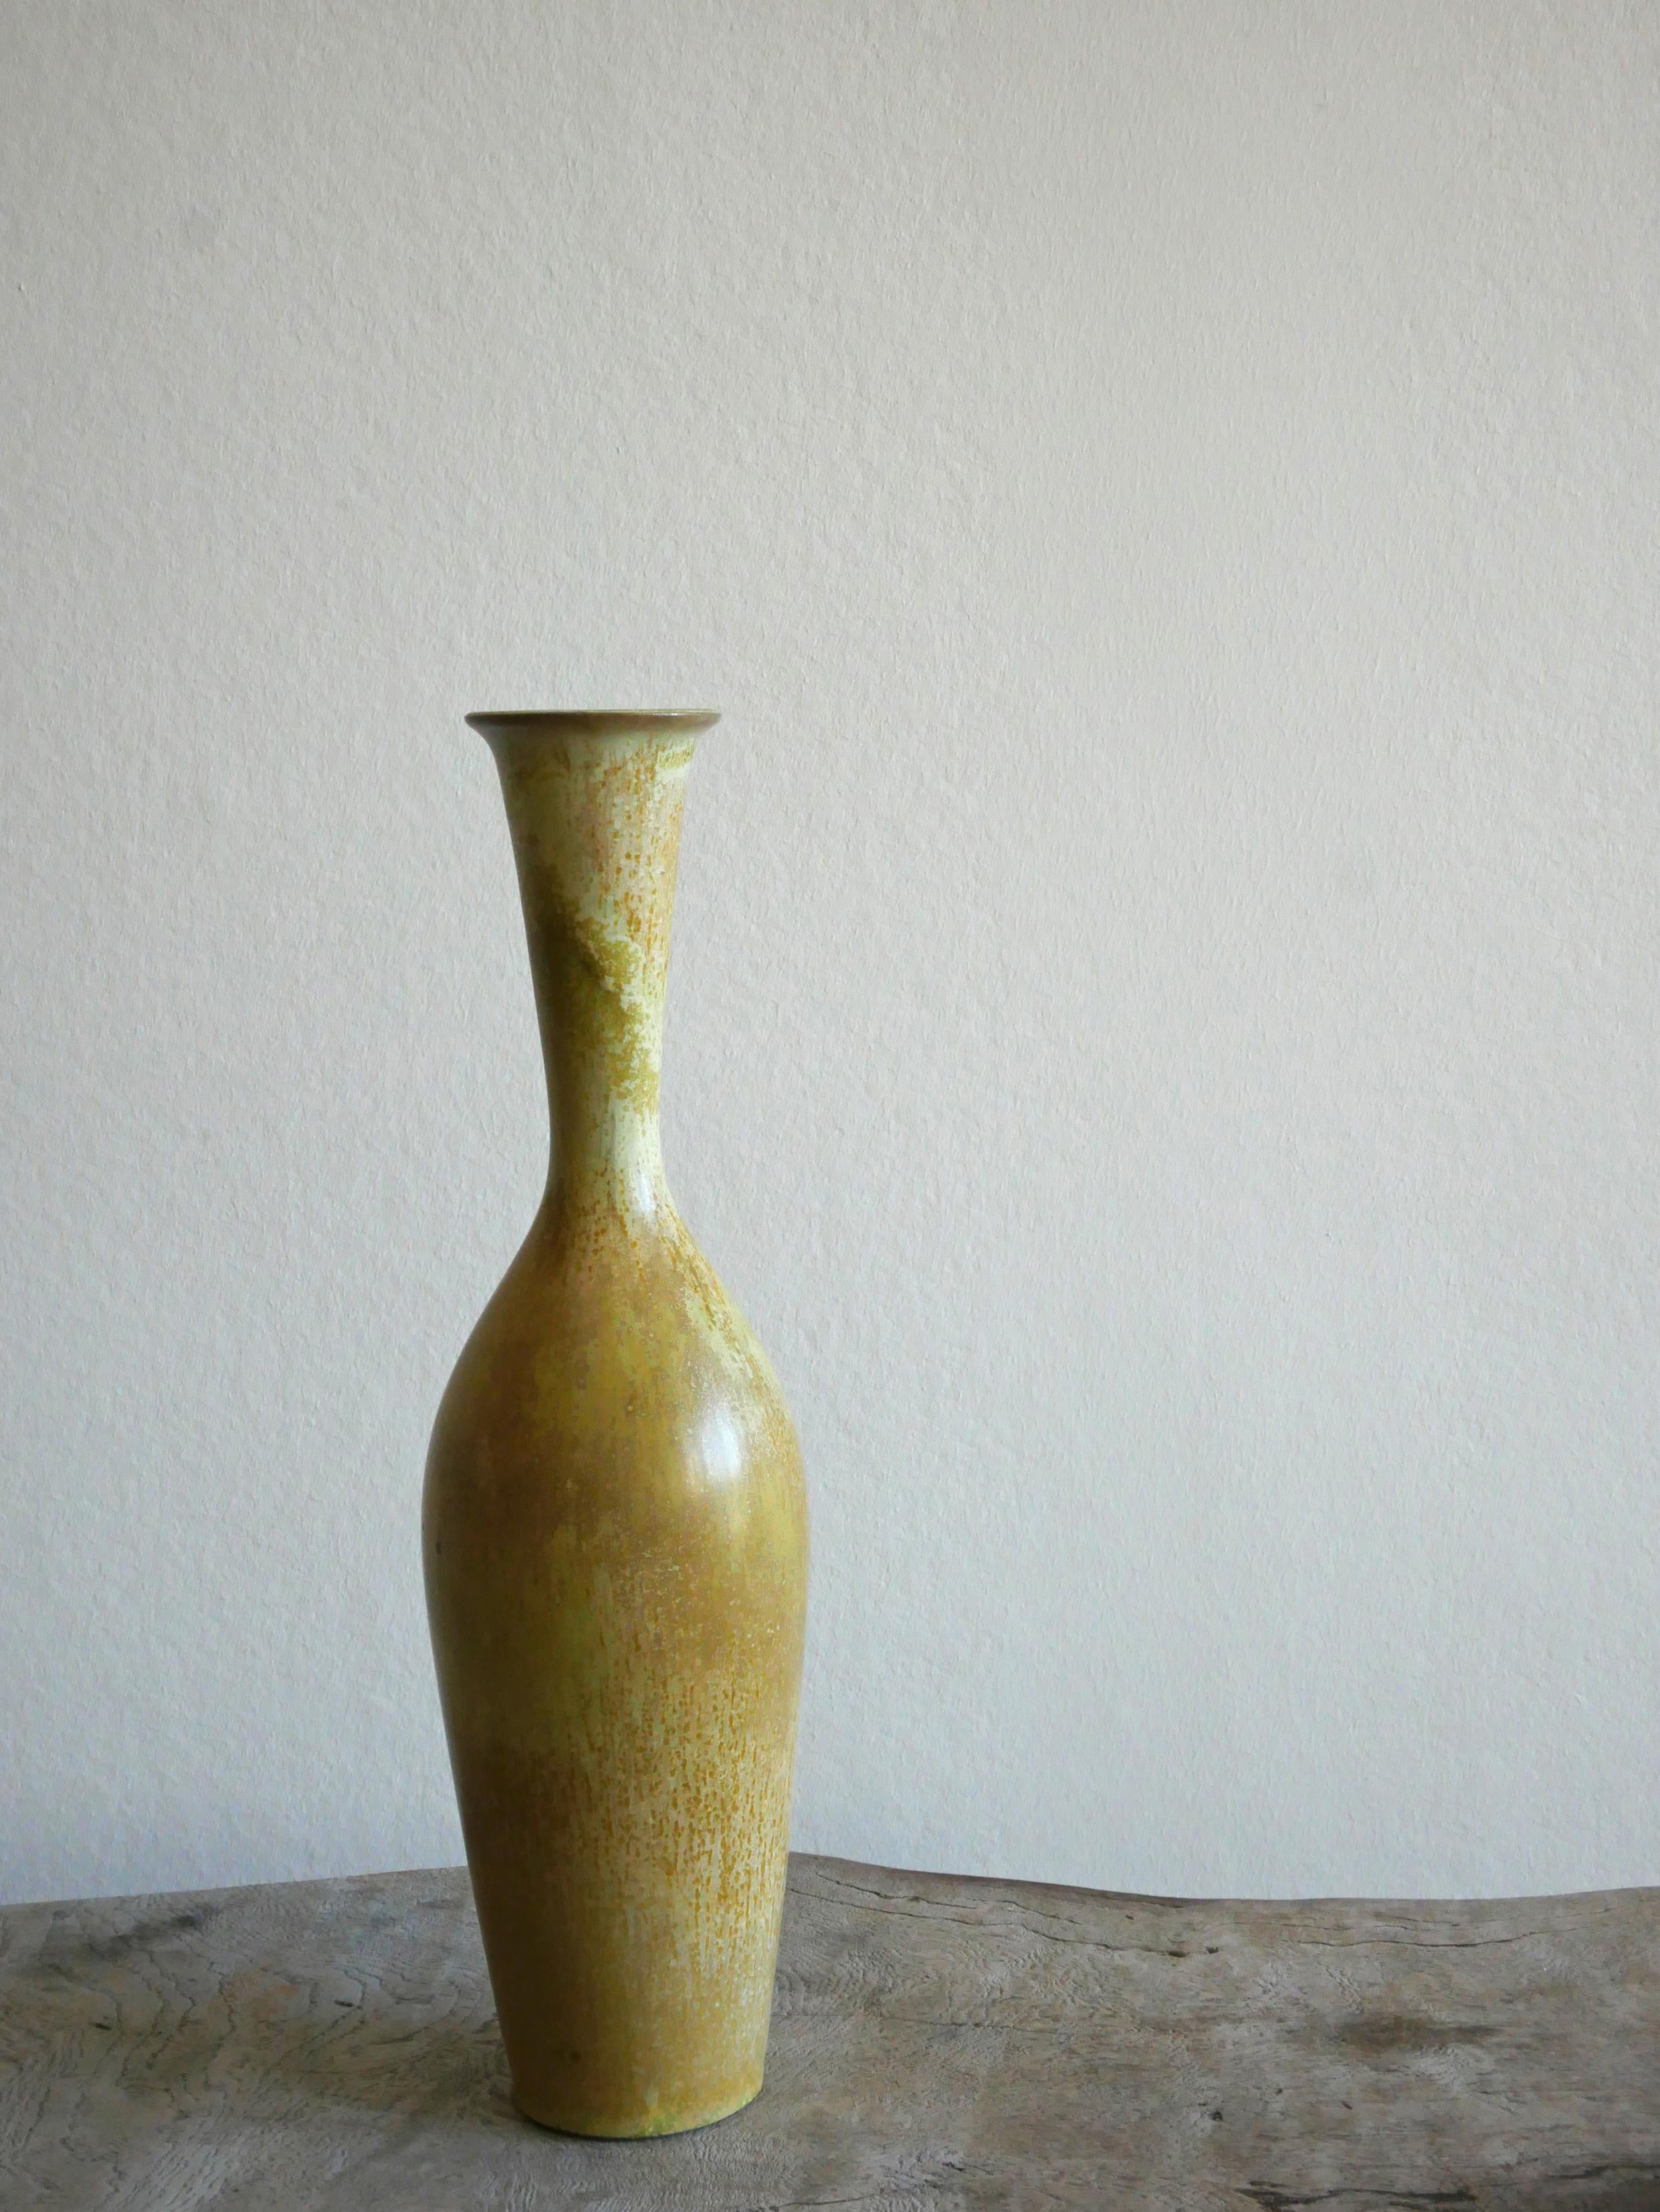 Ce magnifique vase a été créé et dessiné par Gunnar Nylund à l'usine de Rörstrand dans les années 1950 en Suède.

La glaçure aux couleurs vertes et jaunes est étonnante et s'accorde magnifiquement avec la forme du vase en forme de goulot